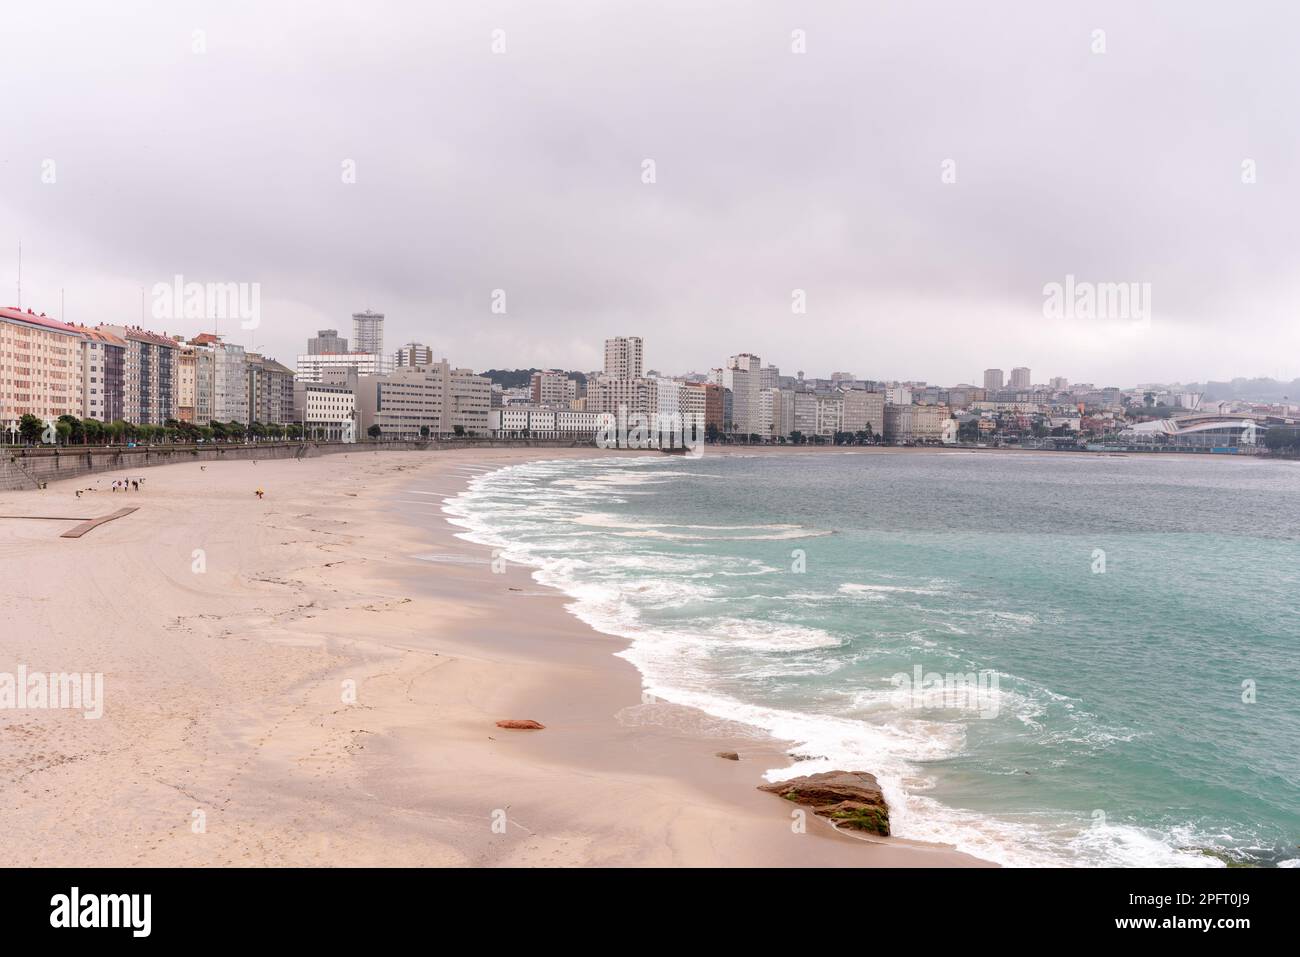 Der weitläufige Sandstrand von La Coruña, Galicien, Spanien, erstreckt sich entlang der Küste und bietet einen atemberaubenden Blick auf den Atlantischen Ozean und die Stadt. Stockfoto